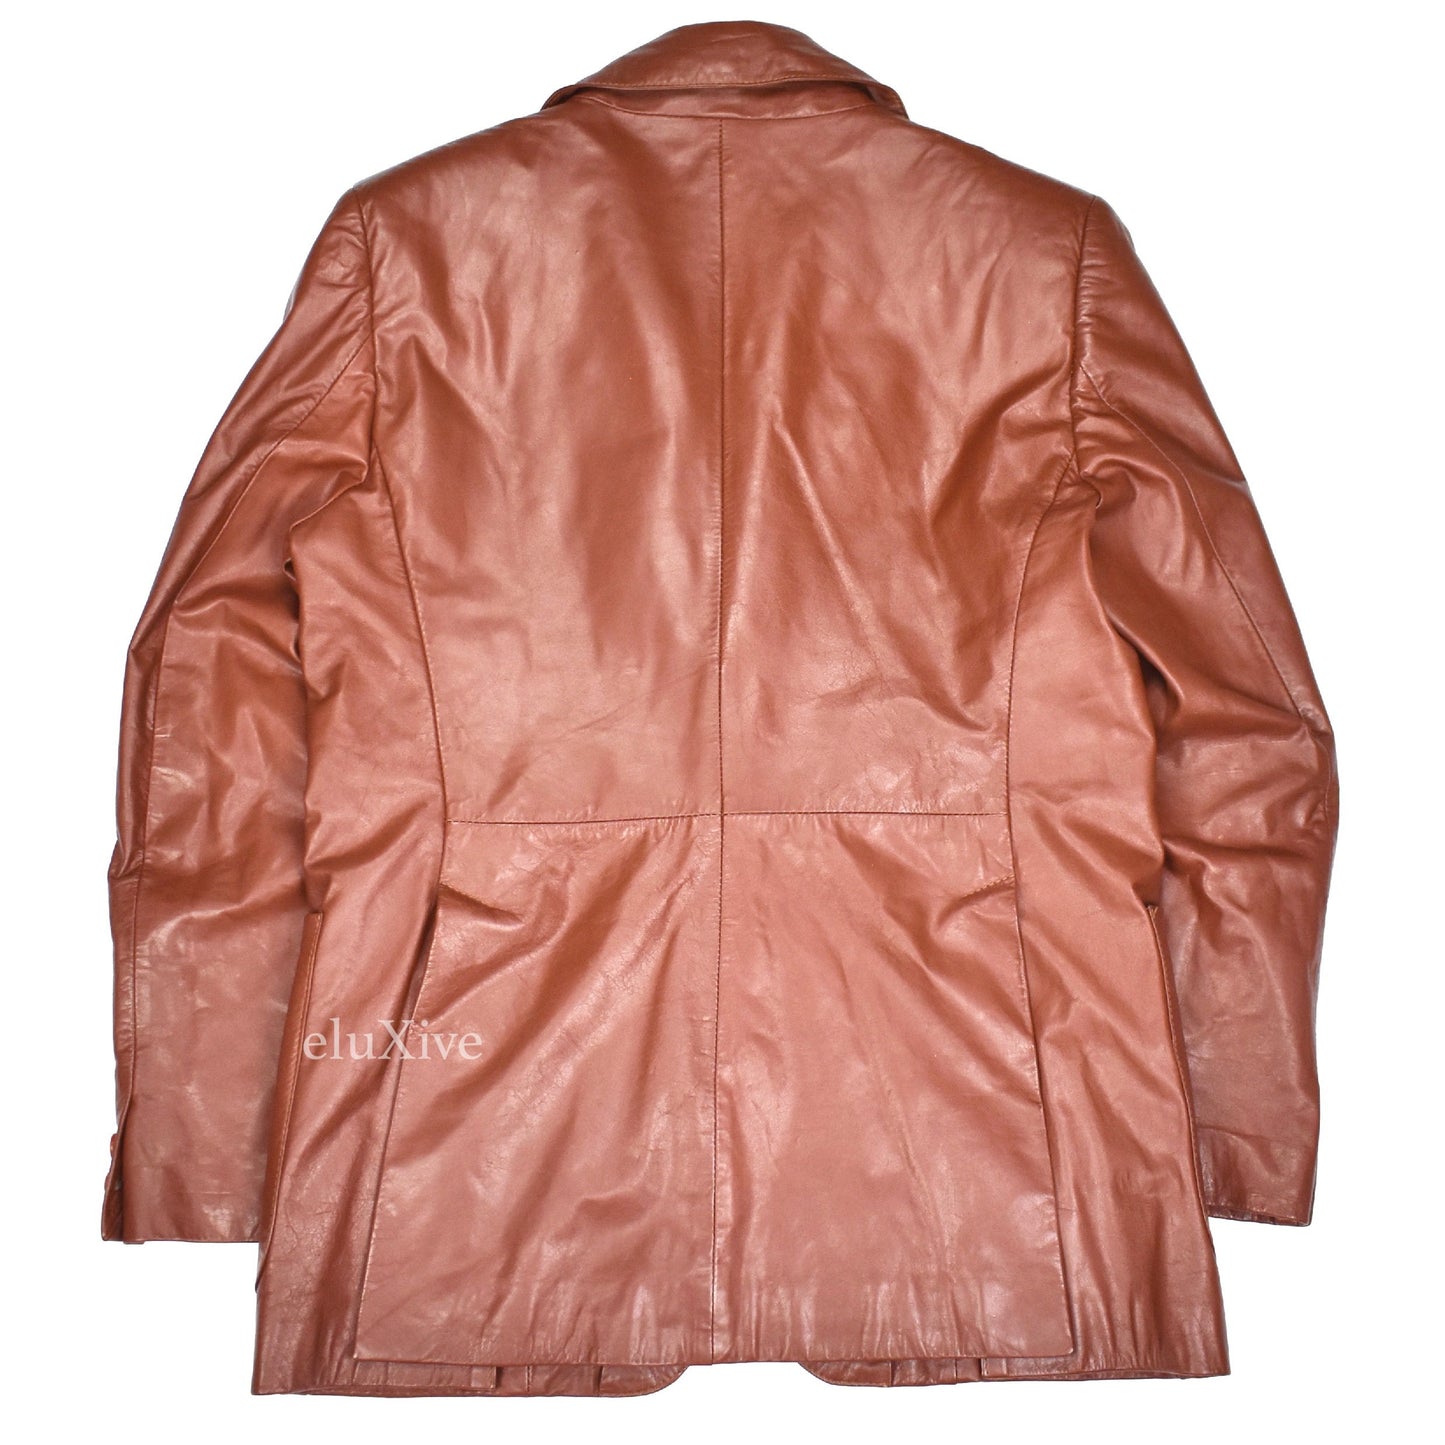 Yves Saint Laurent - 1970s Cognac Leather Blazer